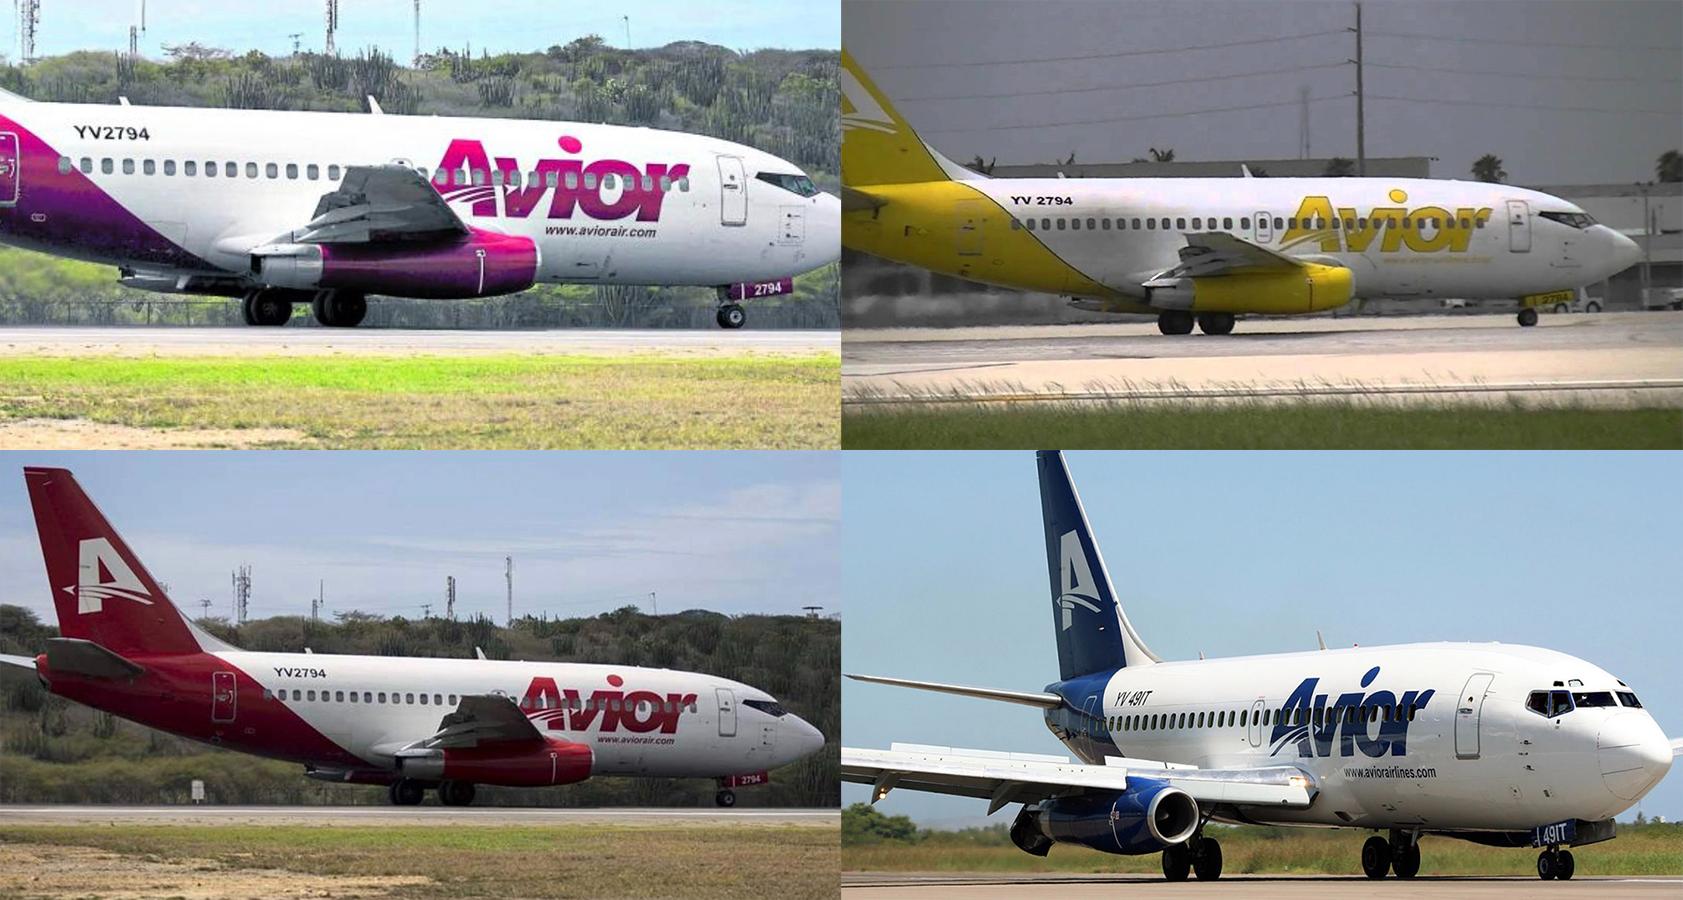 YV2794 y YV3151 de Avior Airlines, repintados para hacerlos parecer como nuevos